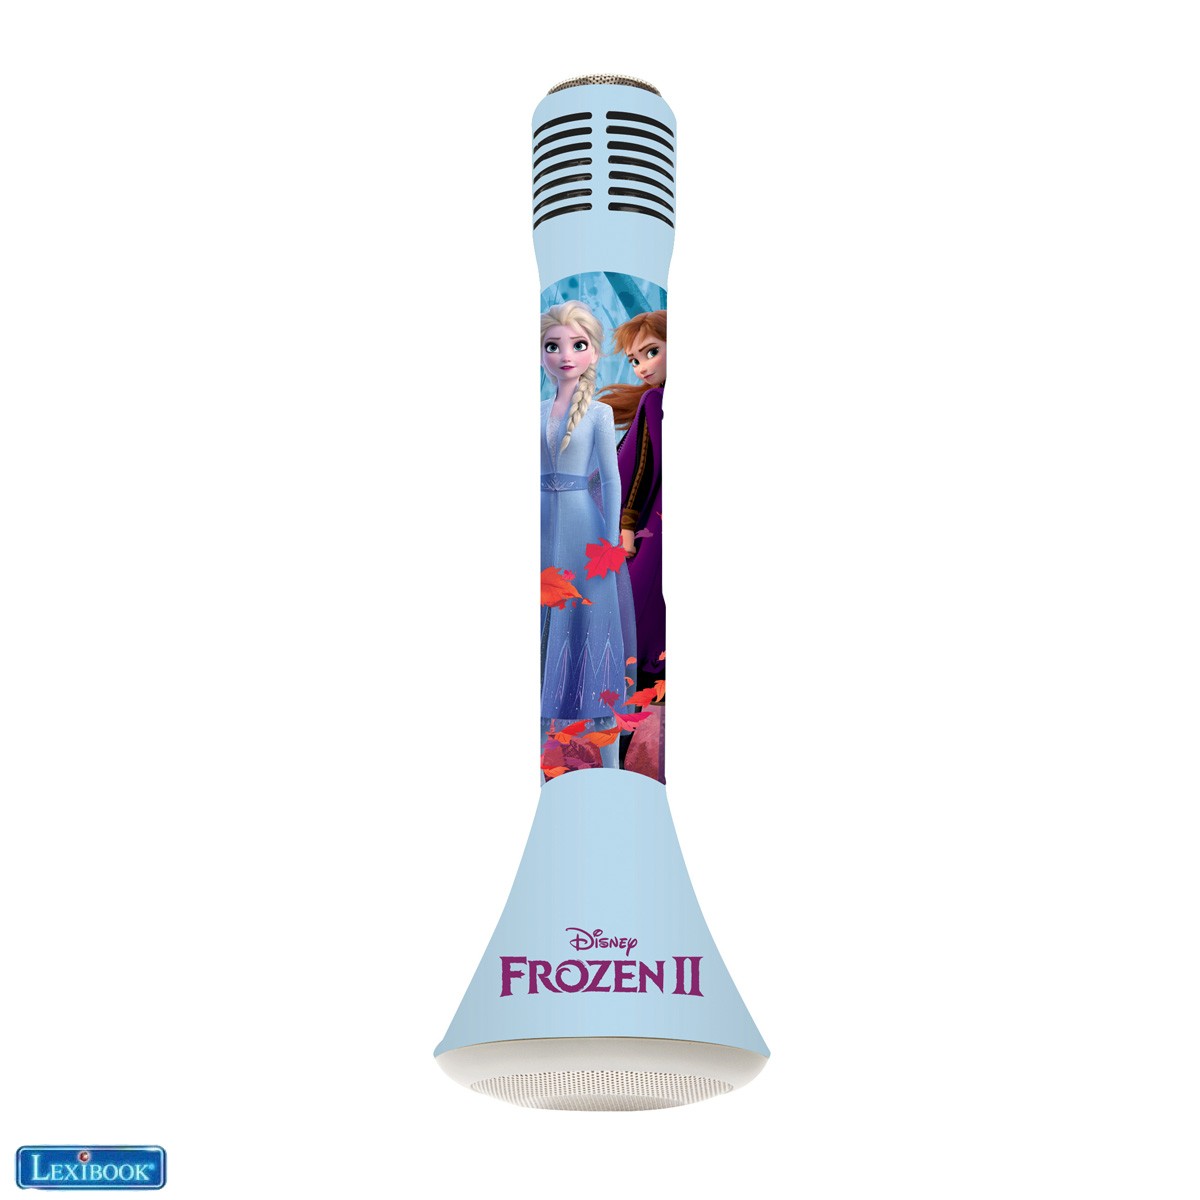  Frozen 2 Elsa Anna Olaf Micrófono Bluetooth® con función de Modificador de voz